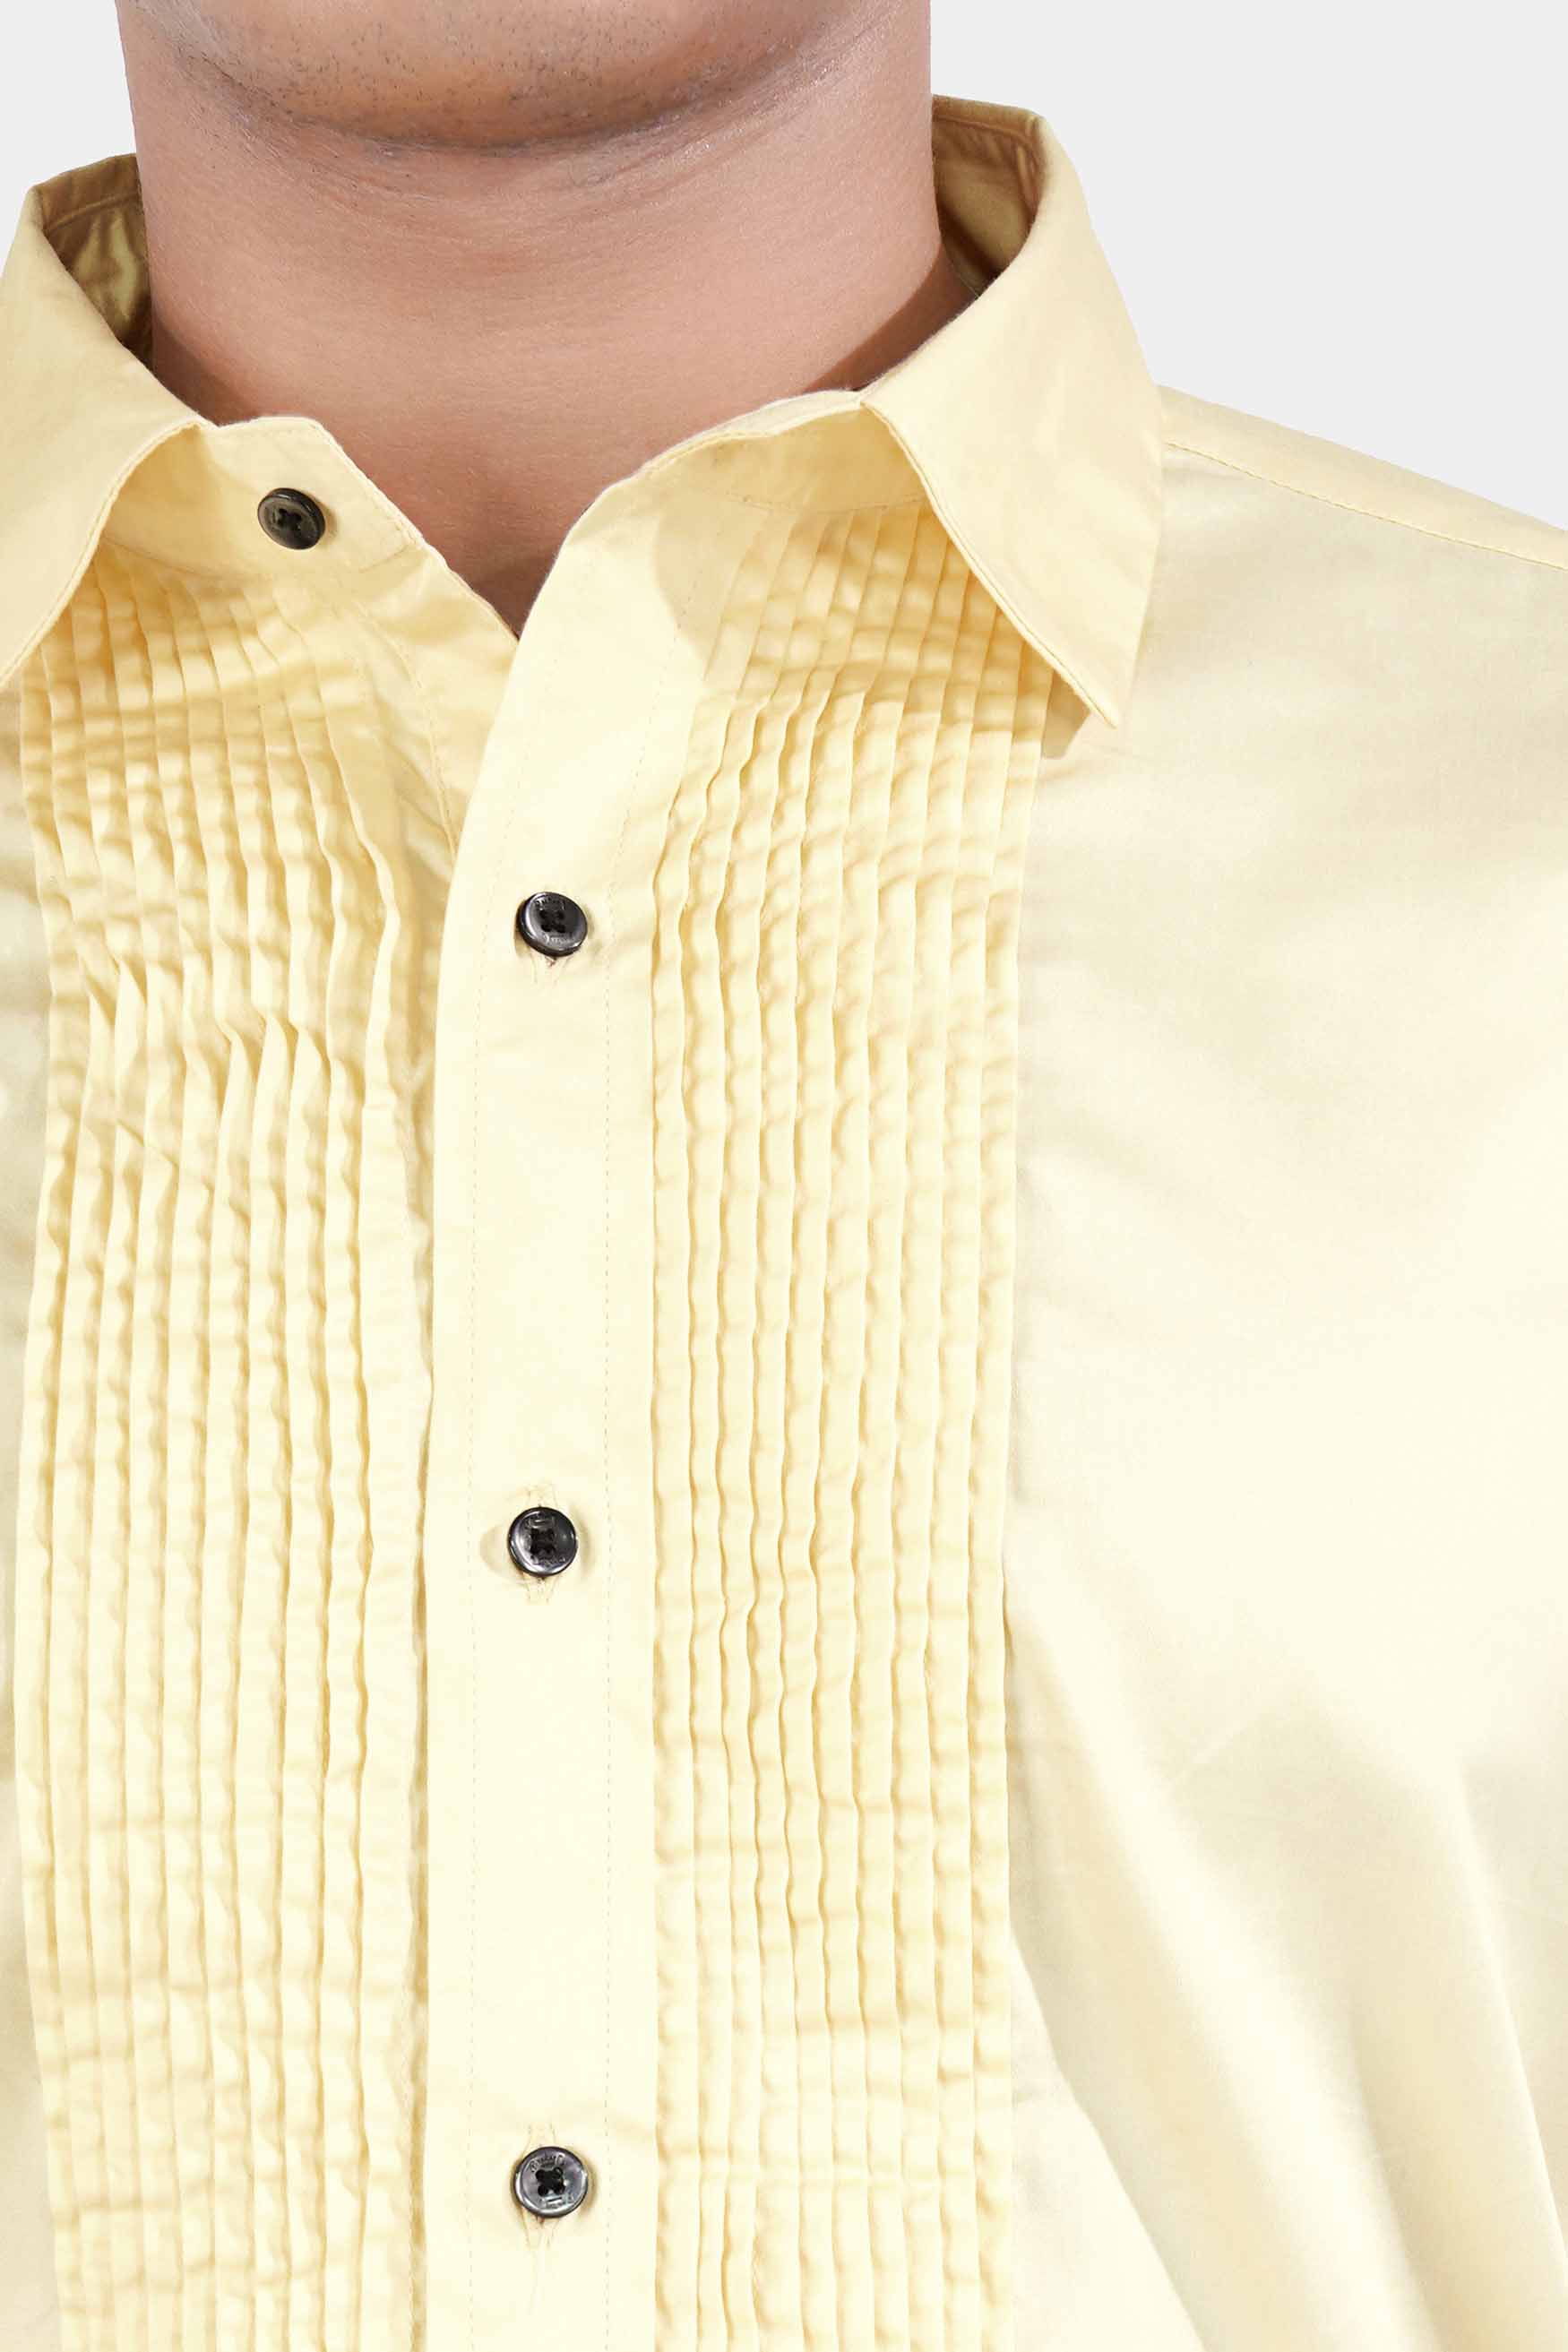 Maize Beige Subtle Sheen Super Soft Premium Cotton Tuxedo Shirt